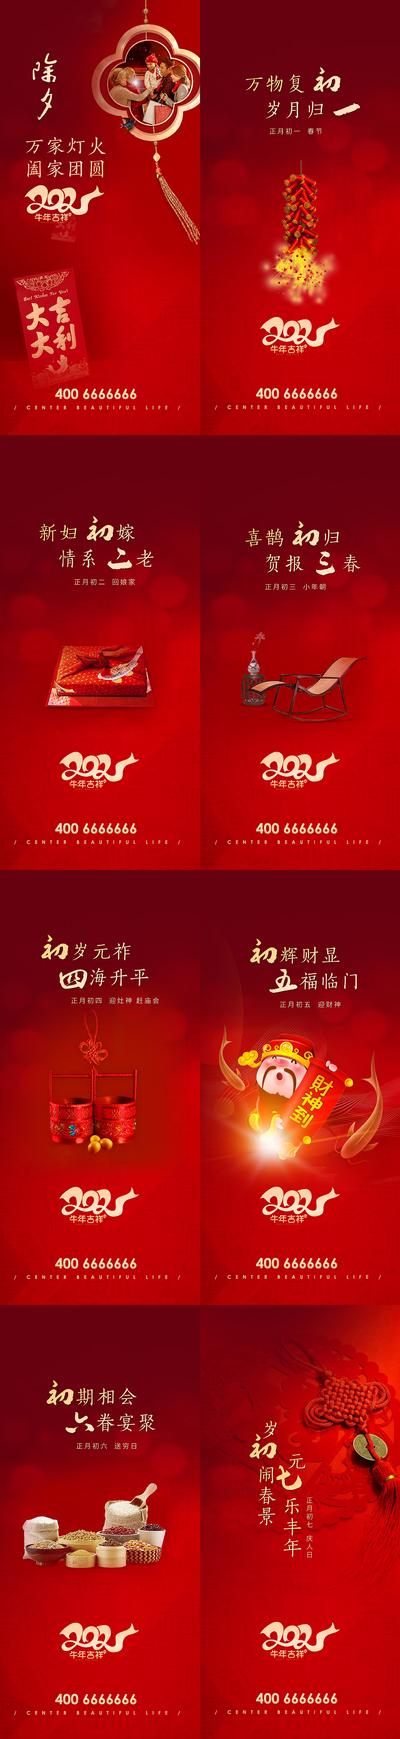 南门网 海报 中国传统节日 春节 除夕 初一 年俗 鞭炮 财神 系列